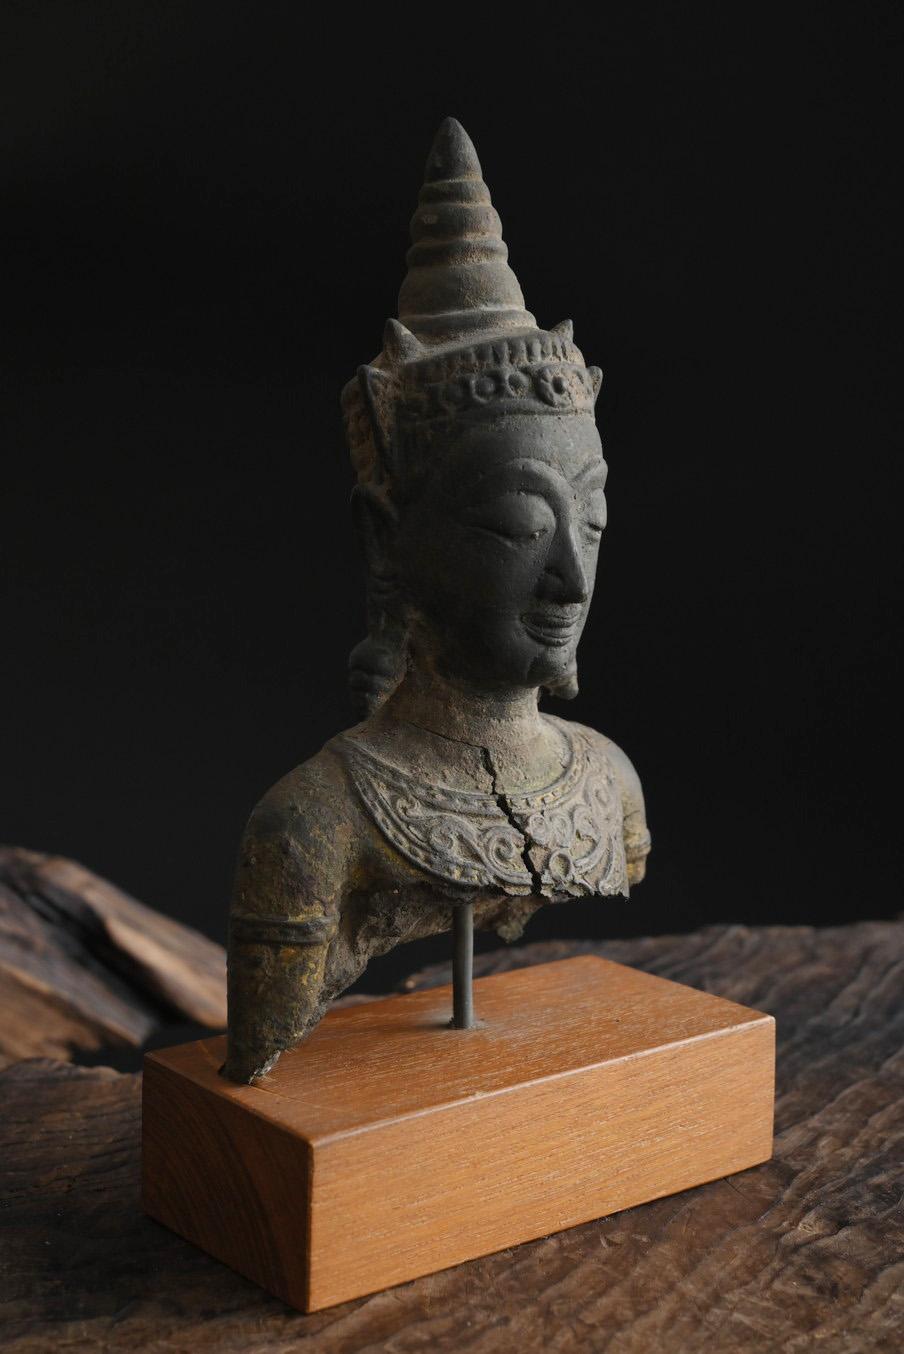 Dies ist der Kopf einer bronzenen Buddha-Statue, die in alten Zeiten in Thailand hergestellt wurde.
Es wird angenommen, dass es sich um eine Buddha-Statue aus der späten Ayutthaya-Periode (17. bis 18. Jahrhundert) handelt.
Im Gegensatz zu den